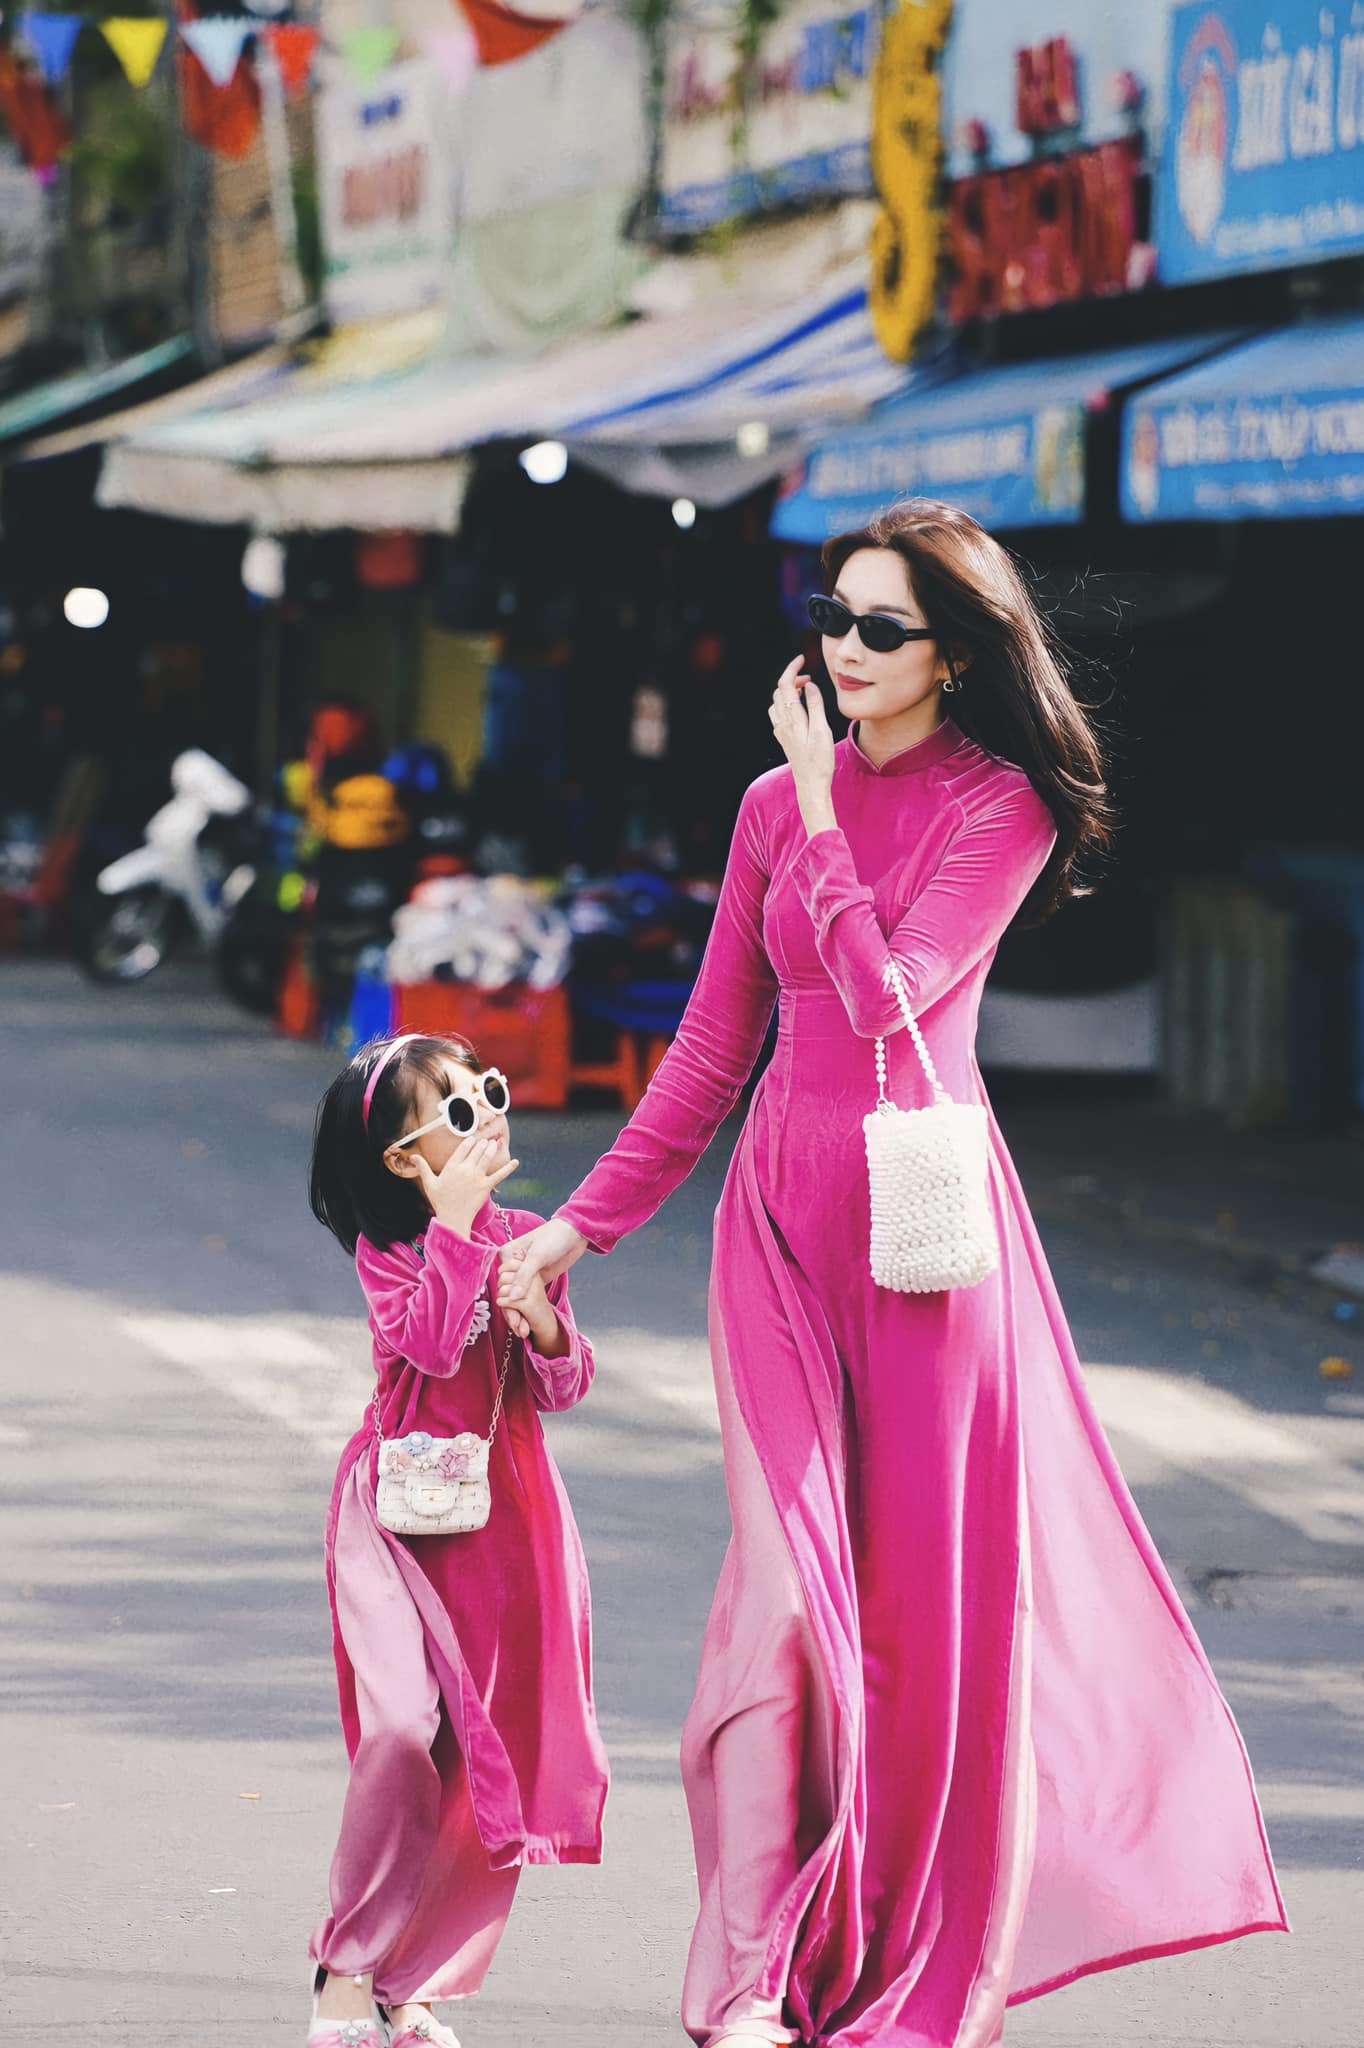 Hoa hậu Đặng Thu Thảo đưa nhóc tỳ hào môn đi du lịch, ái nữ gây ấn tượng vì 1 chi tiết nổi trội - Ảnh 5.